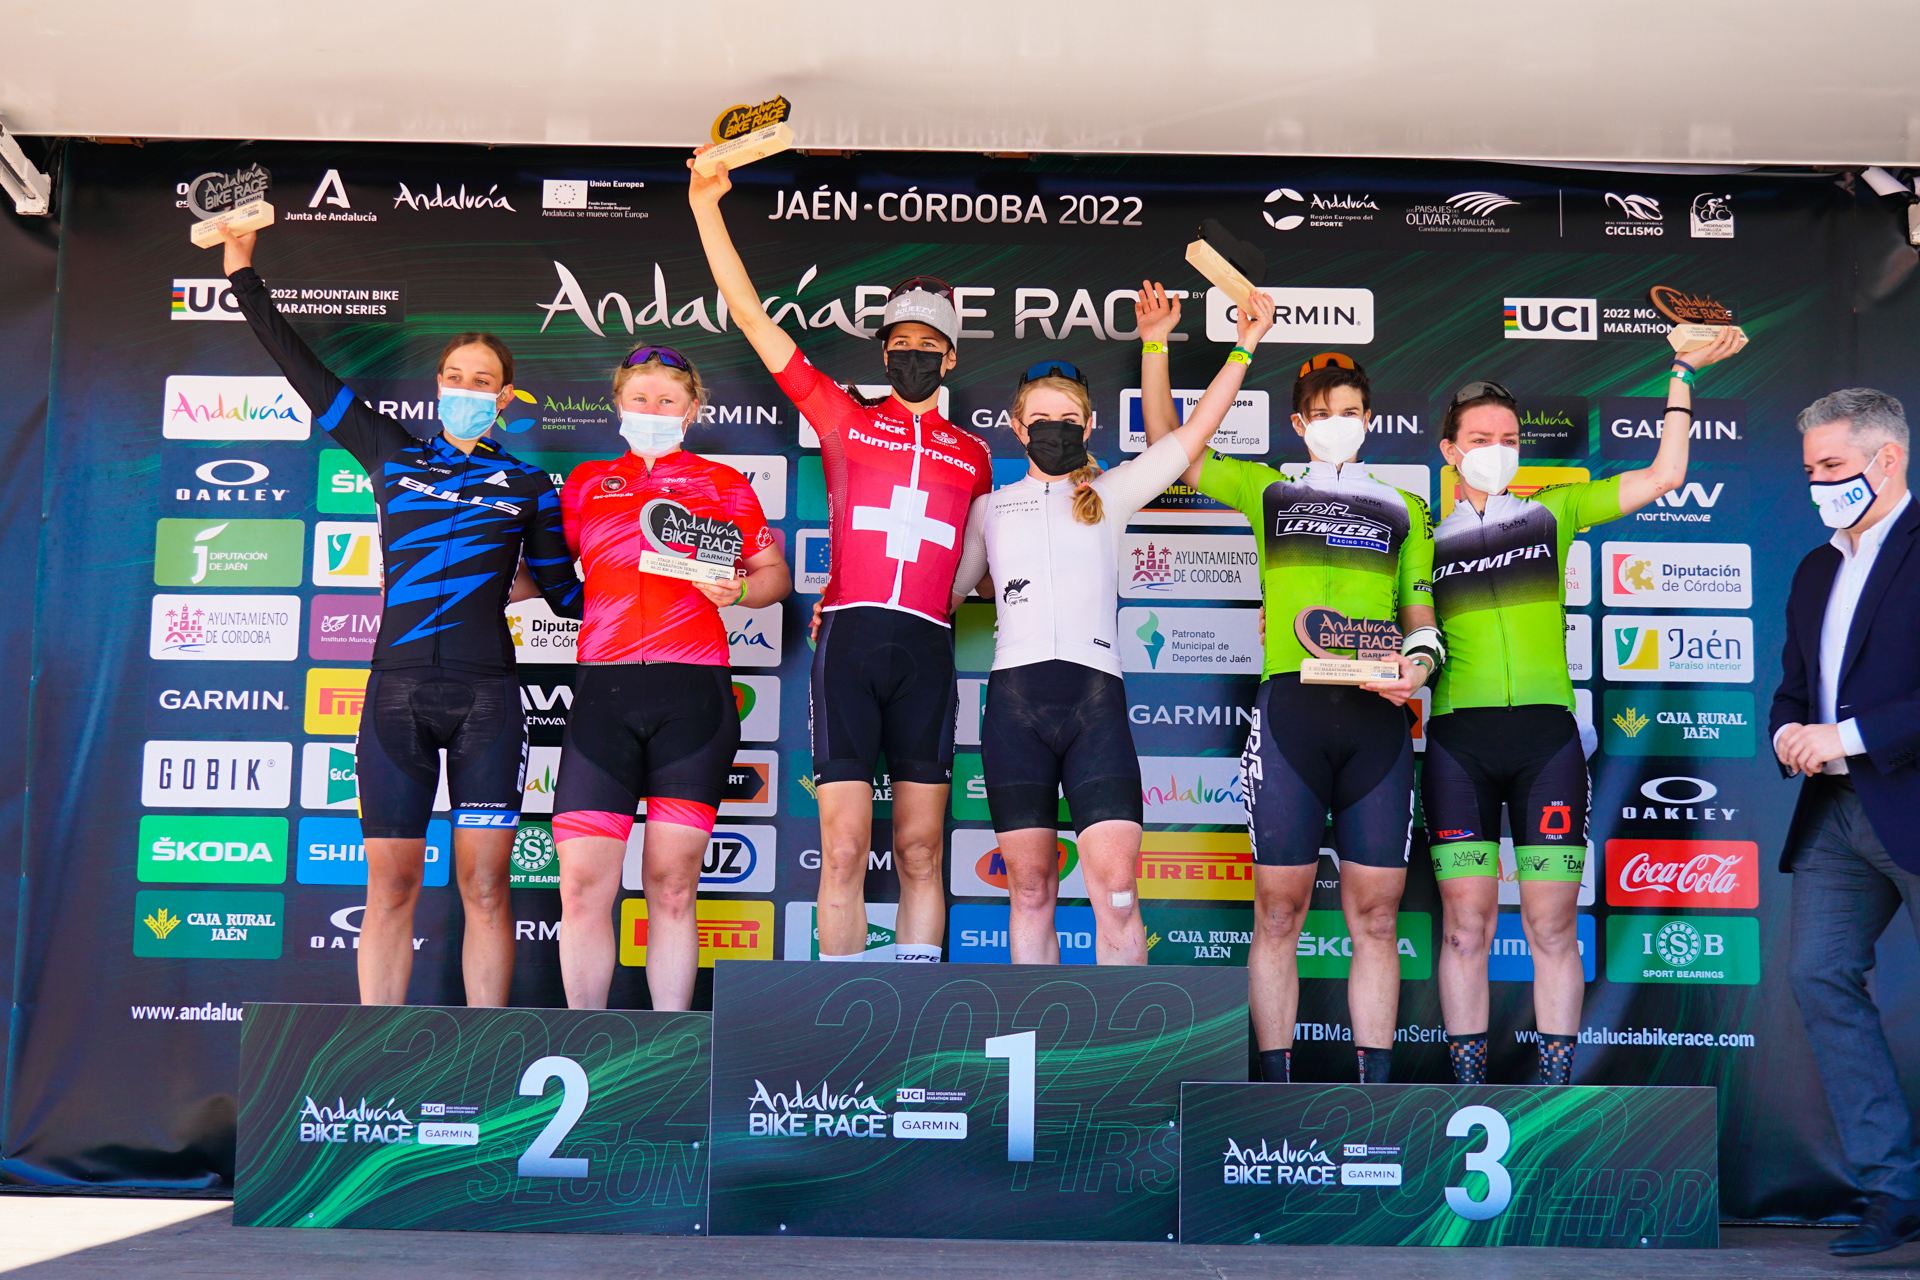 Andalucía Bike Race – Stage 2